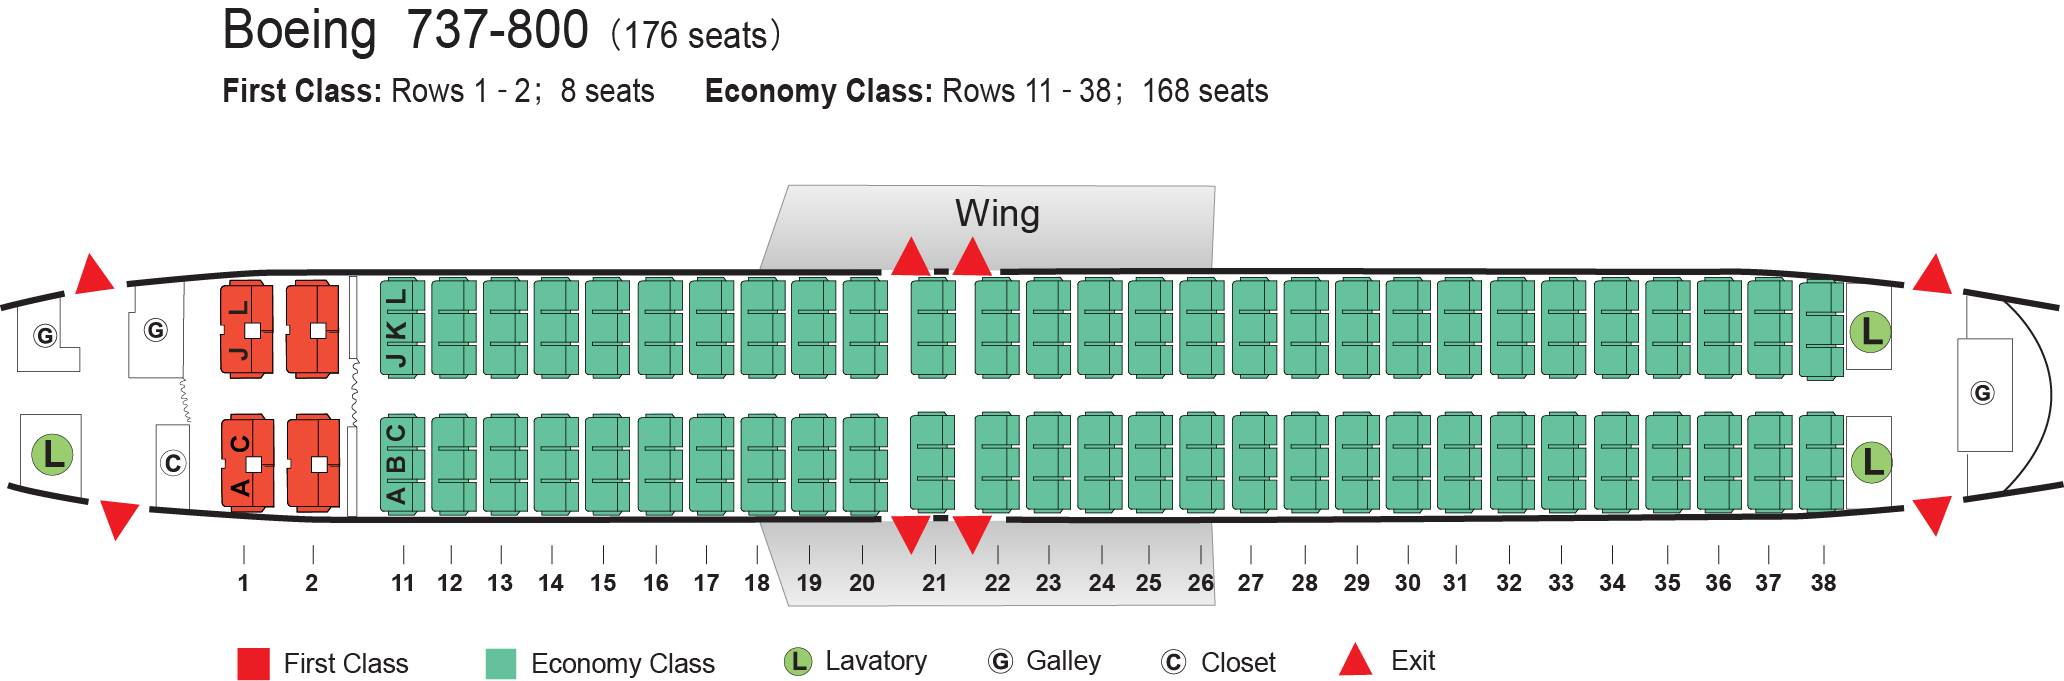 Boeing 737 схема посадочных мест